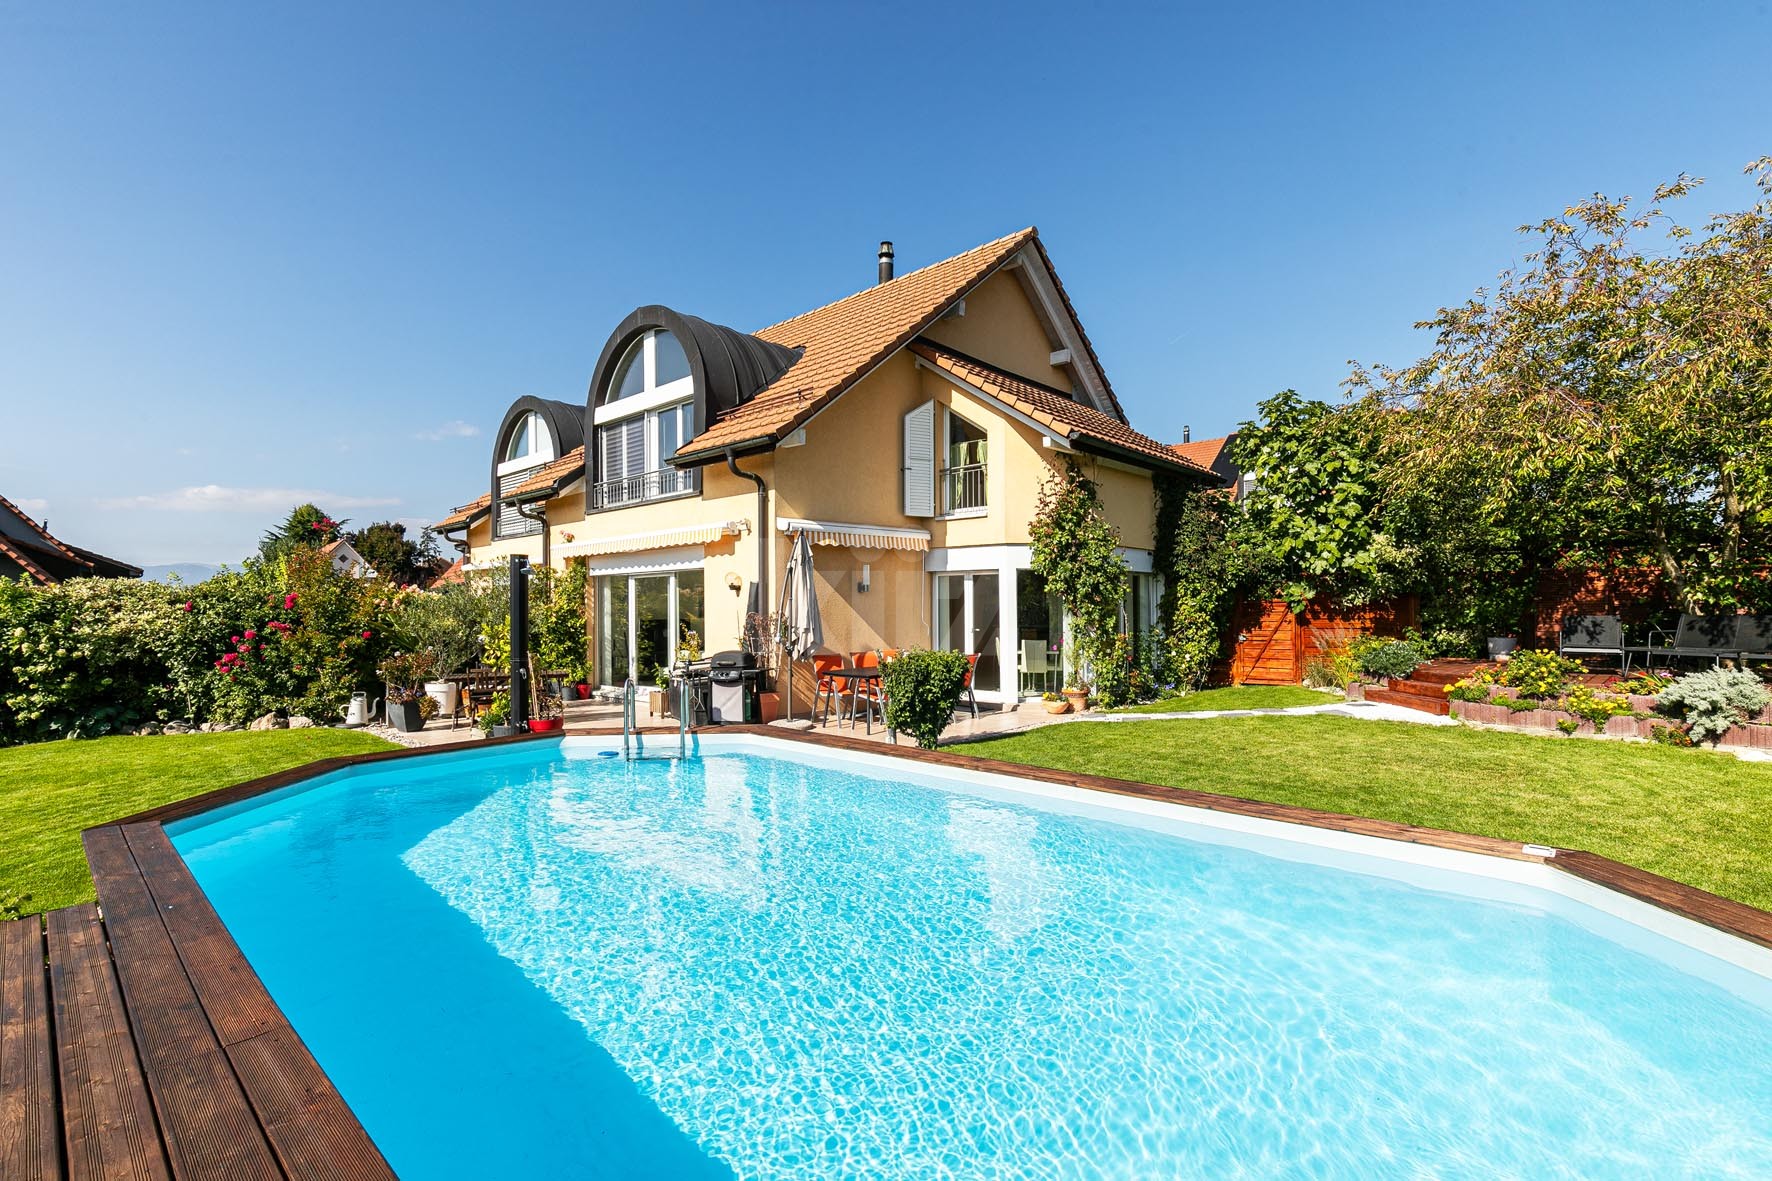 VENDU! Magnifique villa avec jardin, piscine et vue dégagée - 1